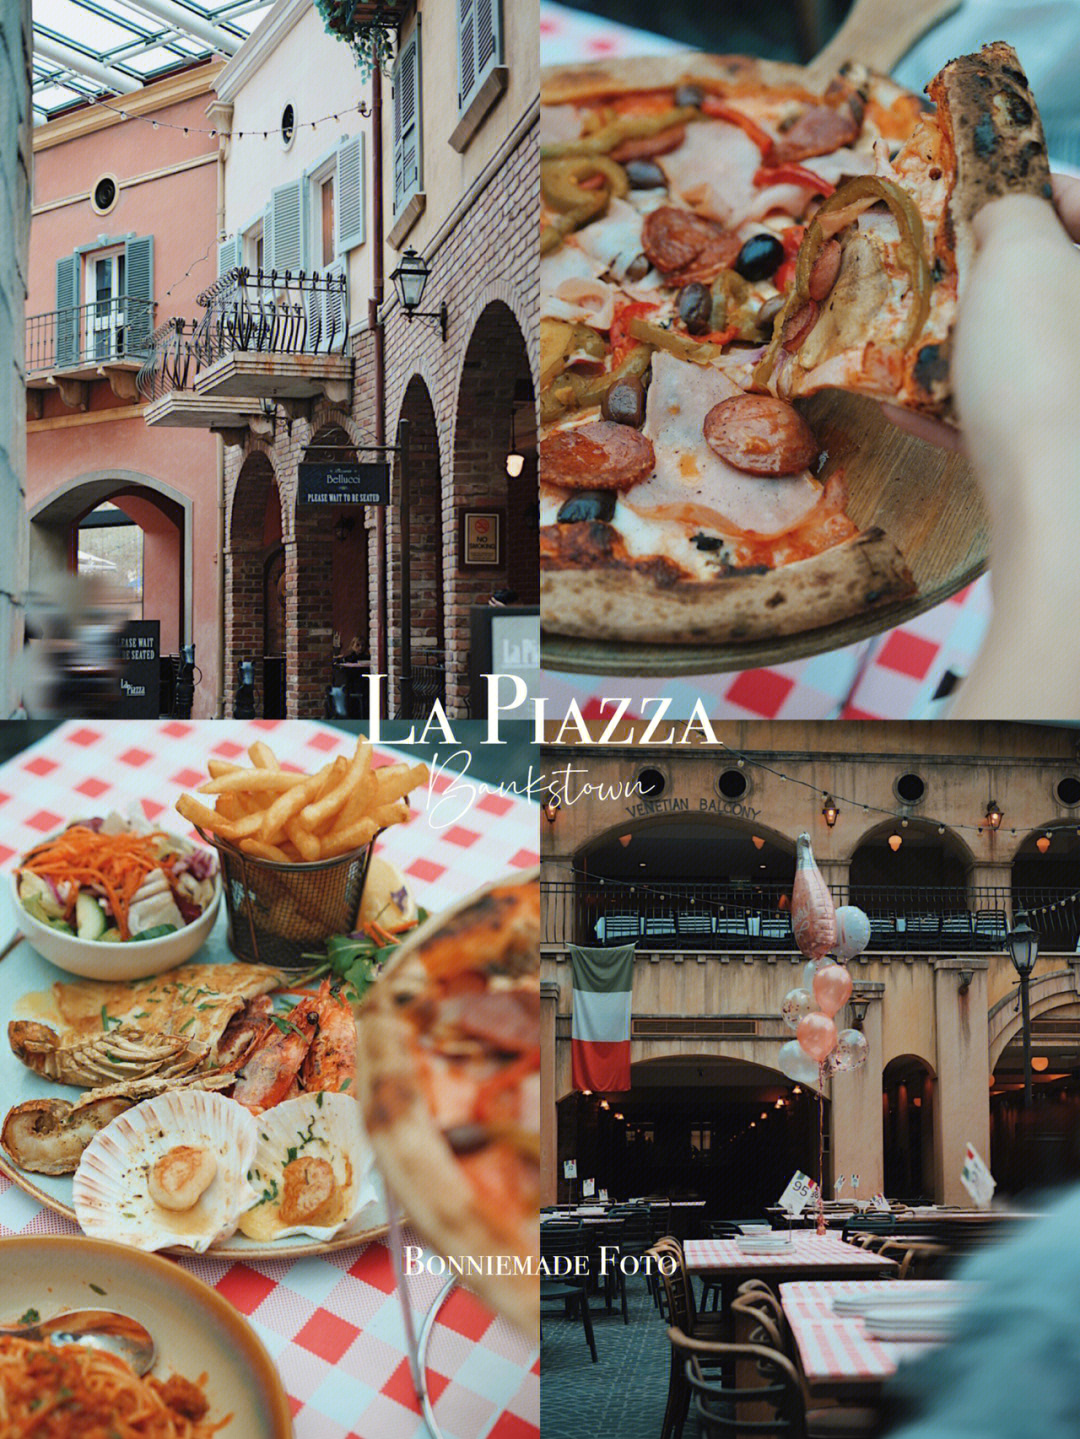 悉尼探店带你去意大利小镇lapiazza